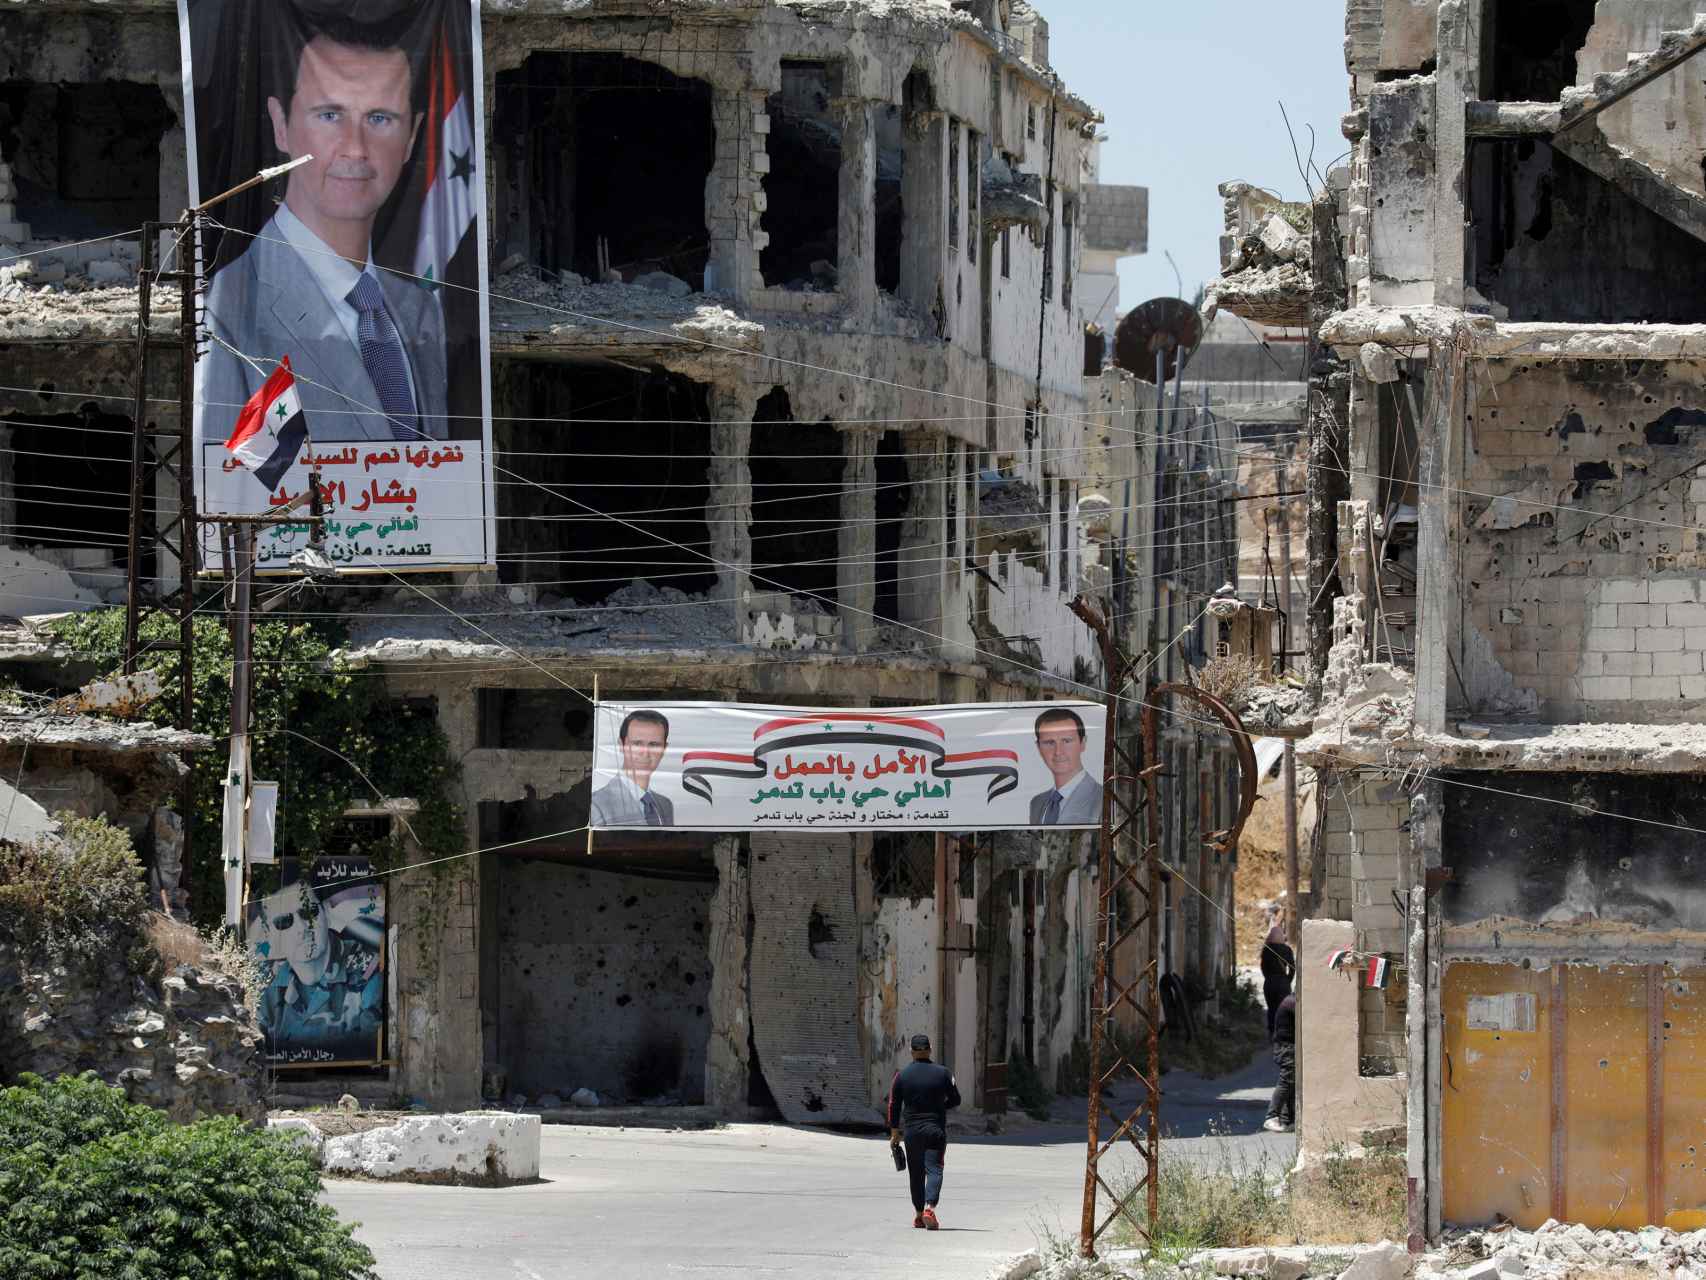 Un hombre pasa junto a pancartas que representan al presidente de Siria, Bashar al-Assad, en Homs, Siria.